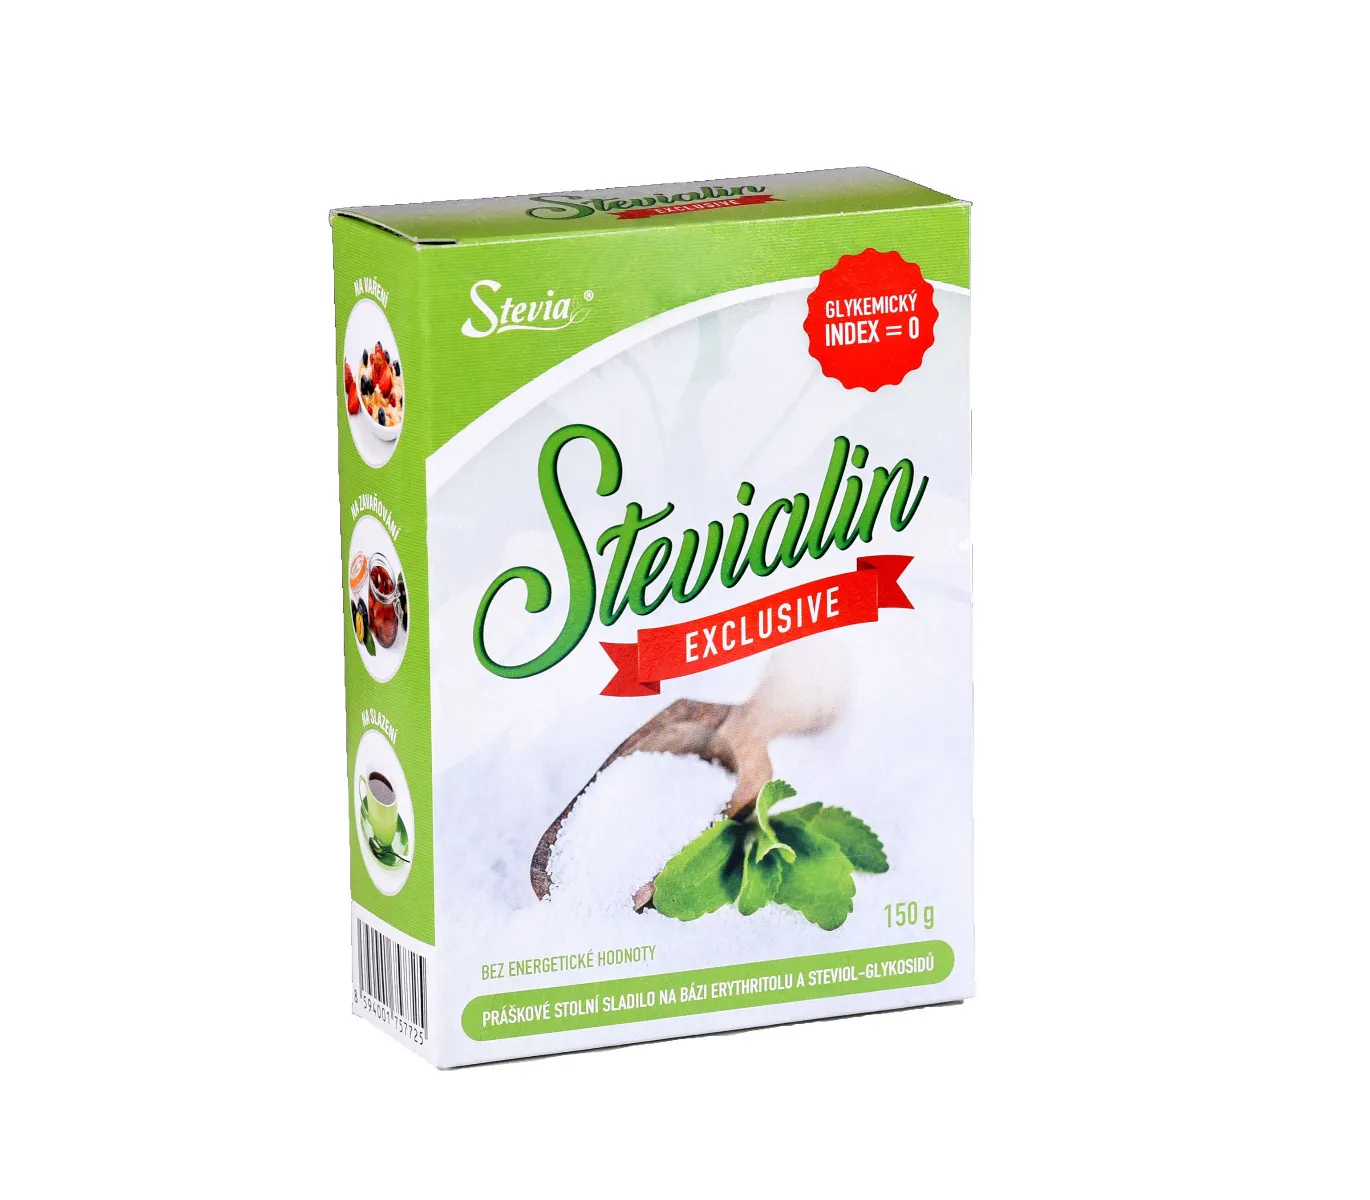 Stevia Stevialin Exclusive